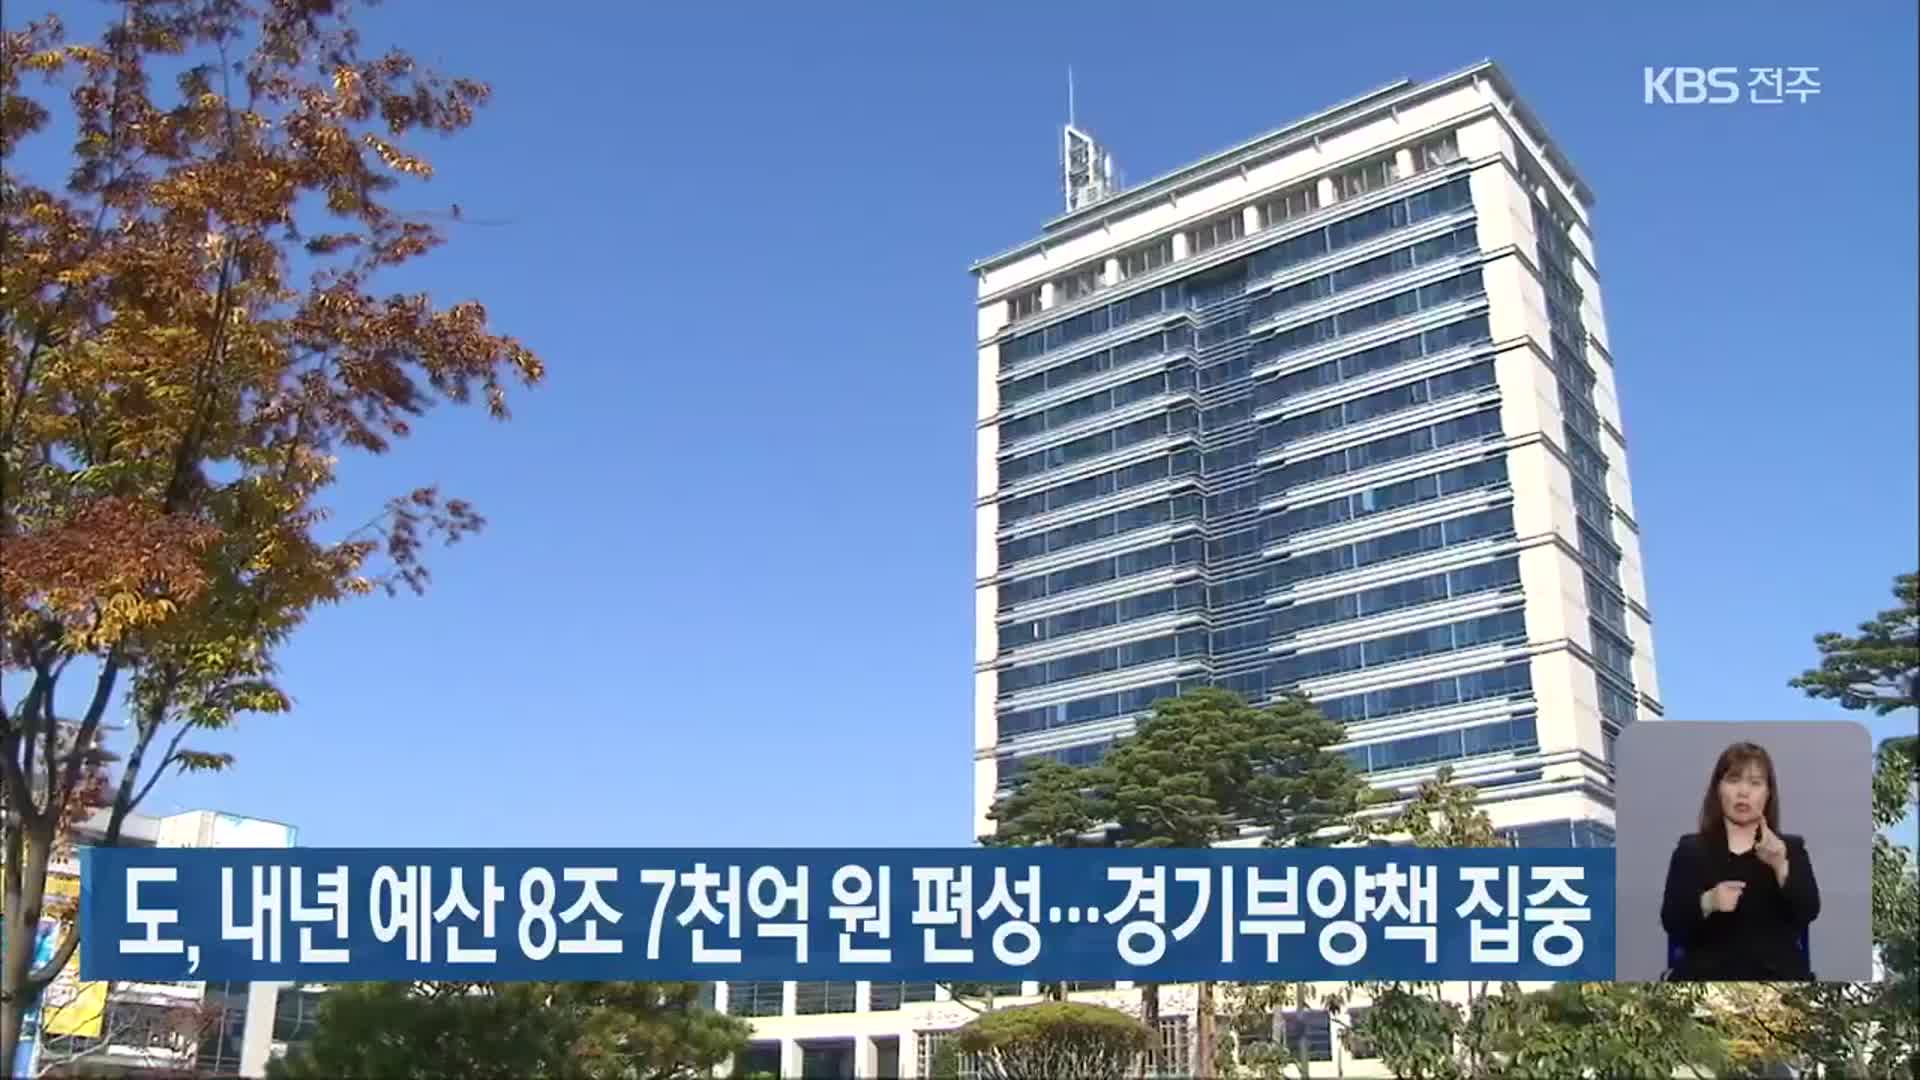 전라북도, 내년 예산 8조 7천억 원 편성…경기부양책 집중